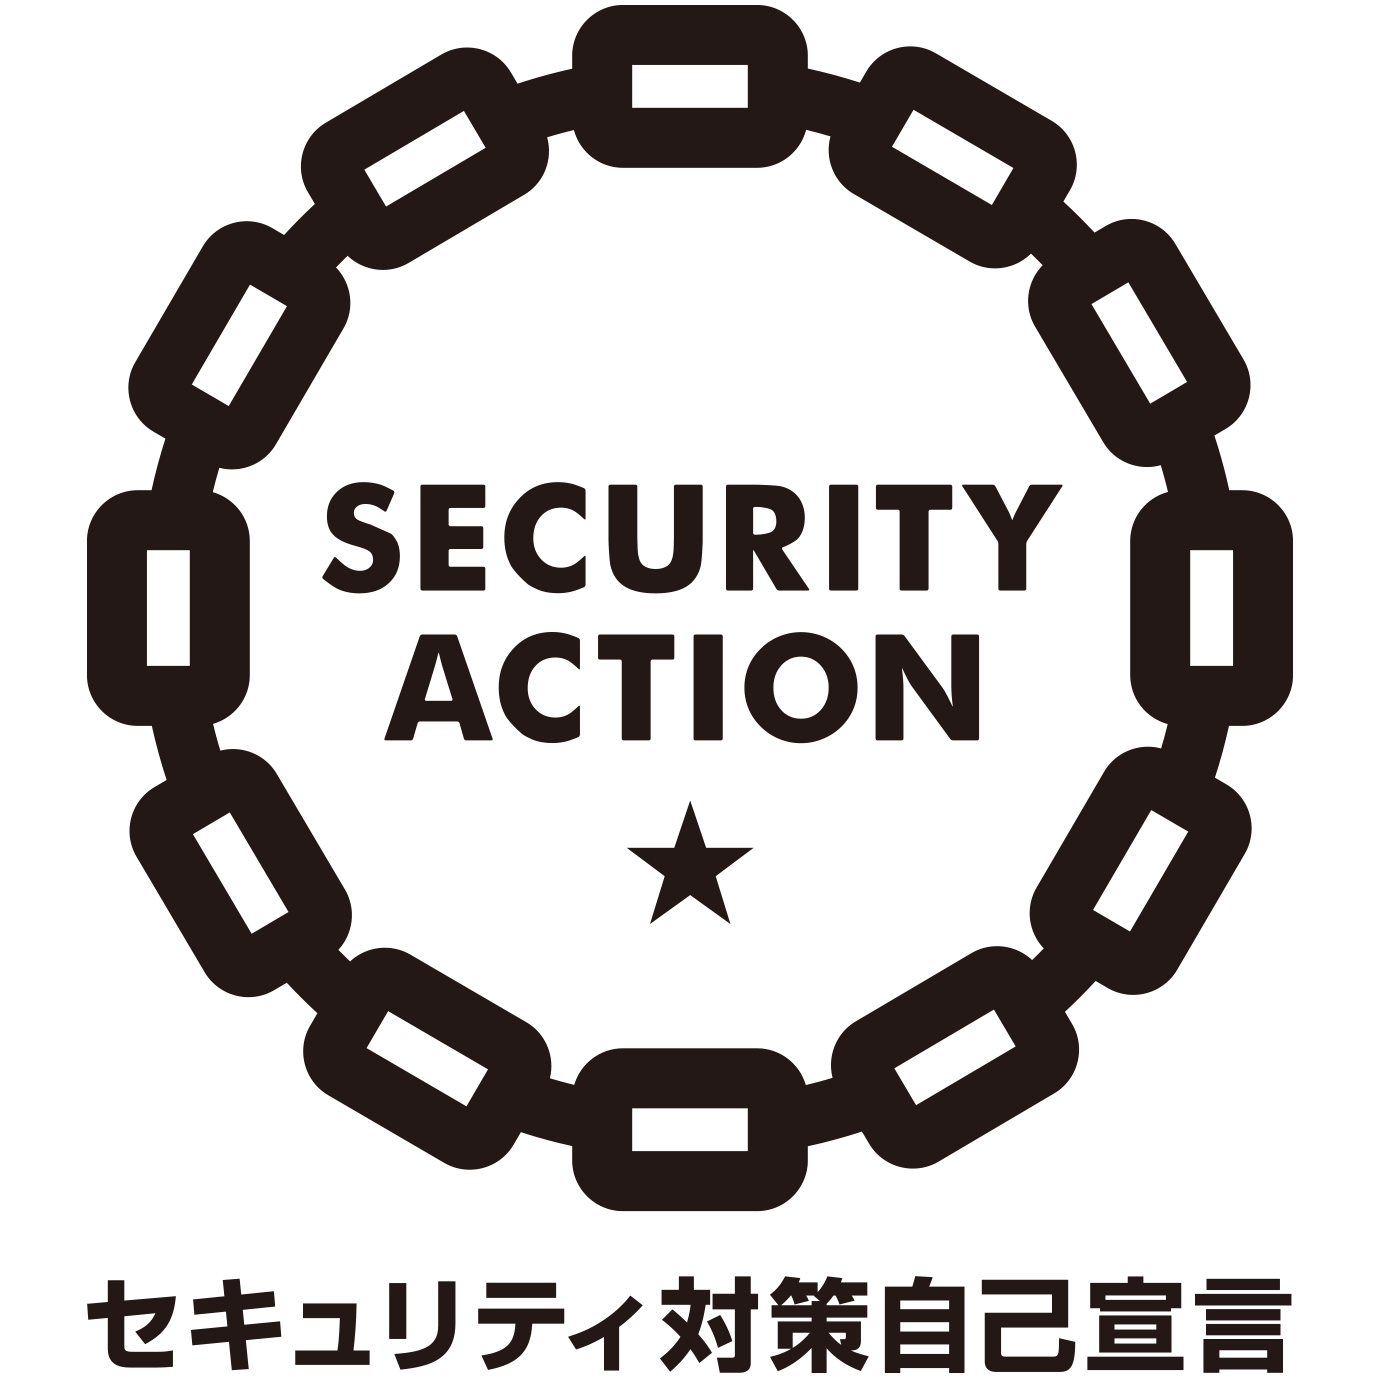 security_action_hitotsuboshi-large_bw